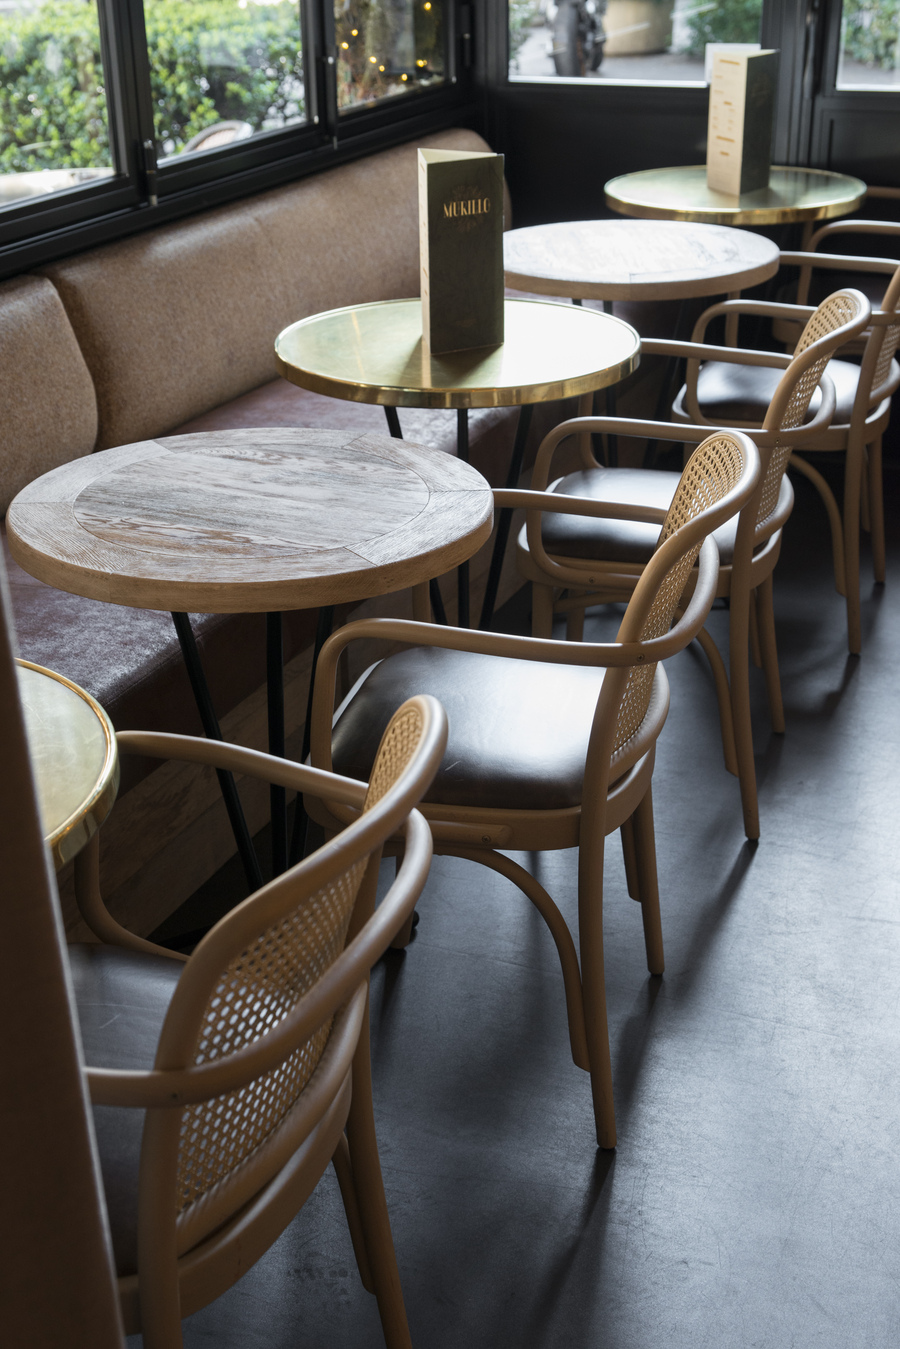 Restaurant Le Murillo de Paris - Décoration Emma Roux. Chaise en cannage et galette de cuir. Plateaux de bois.